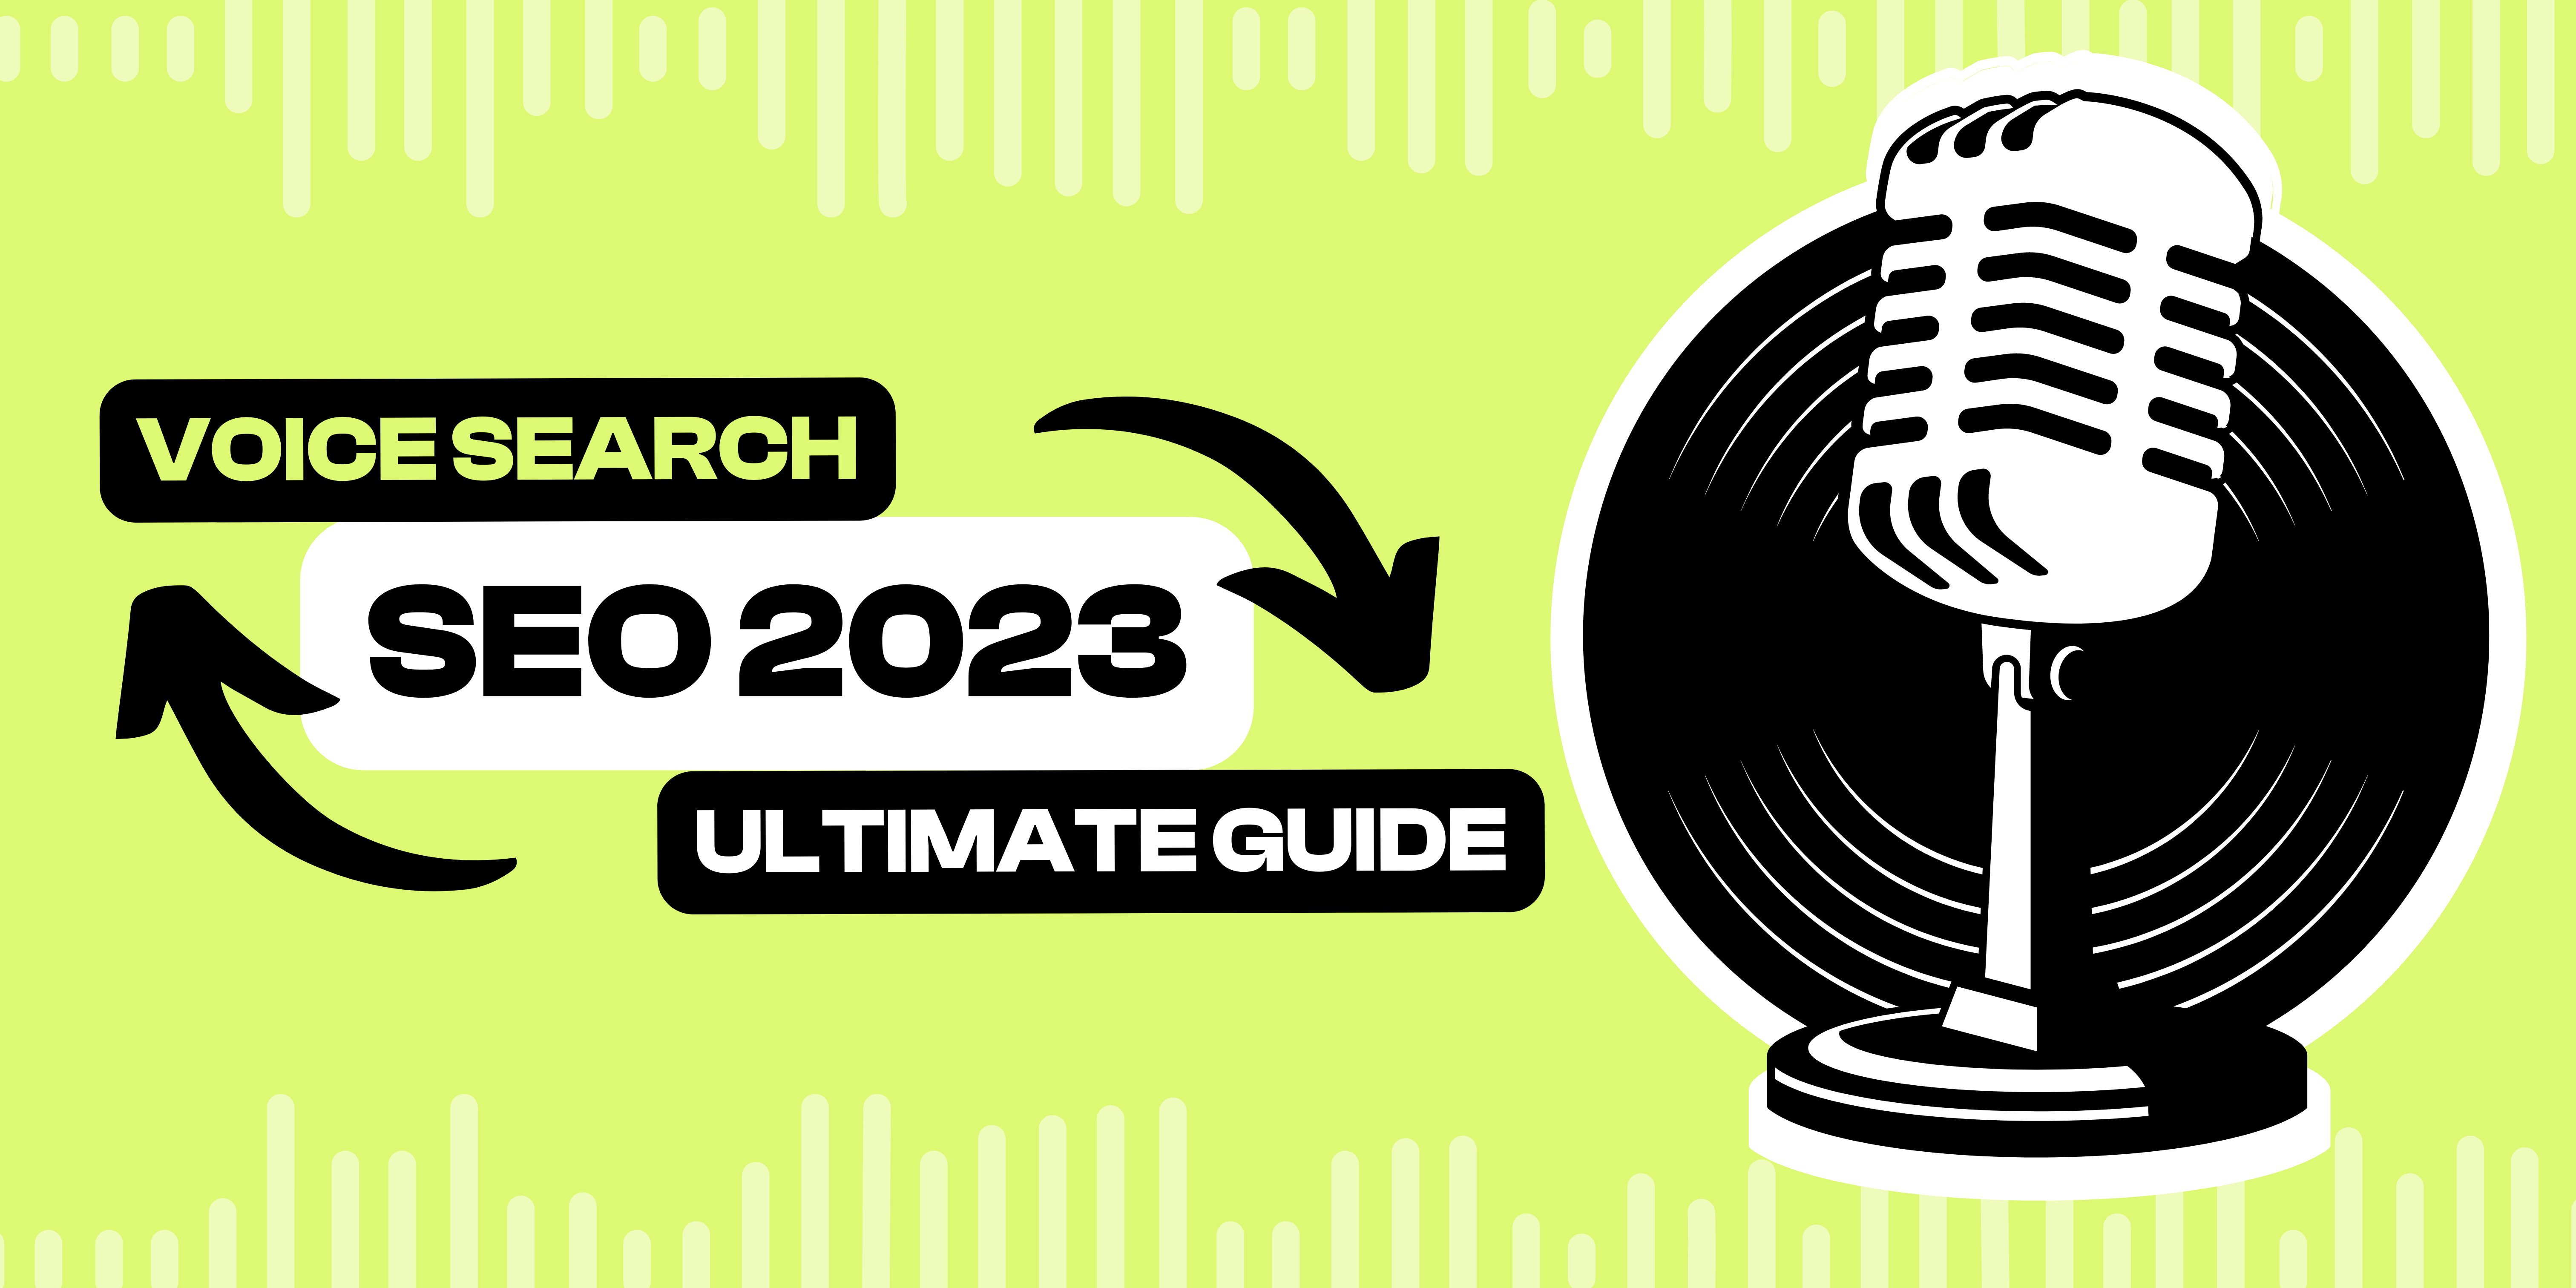 voice search seo 2023